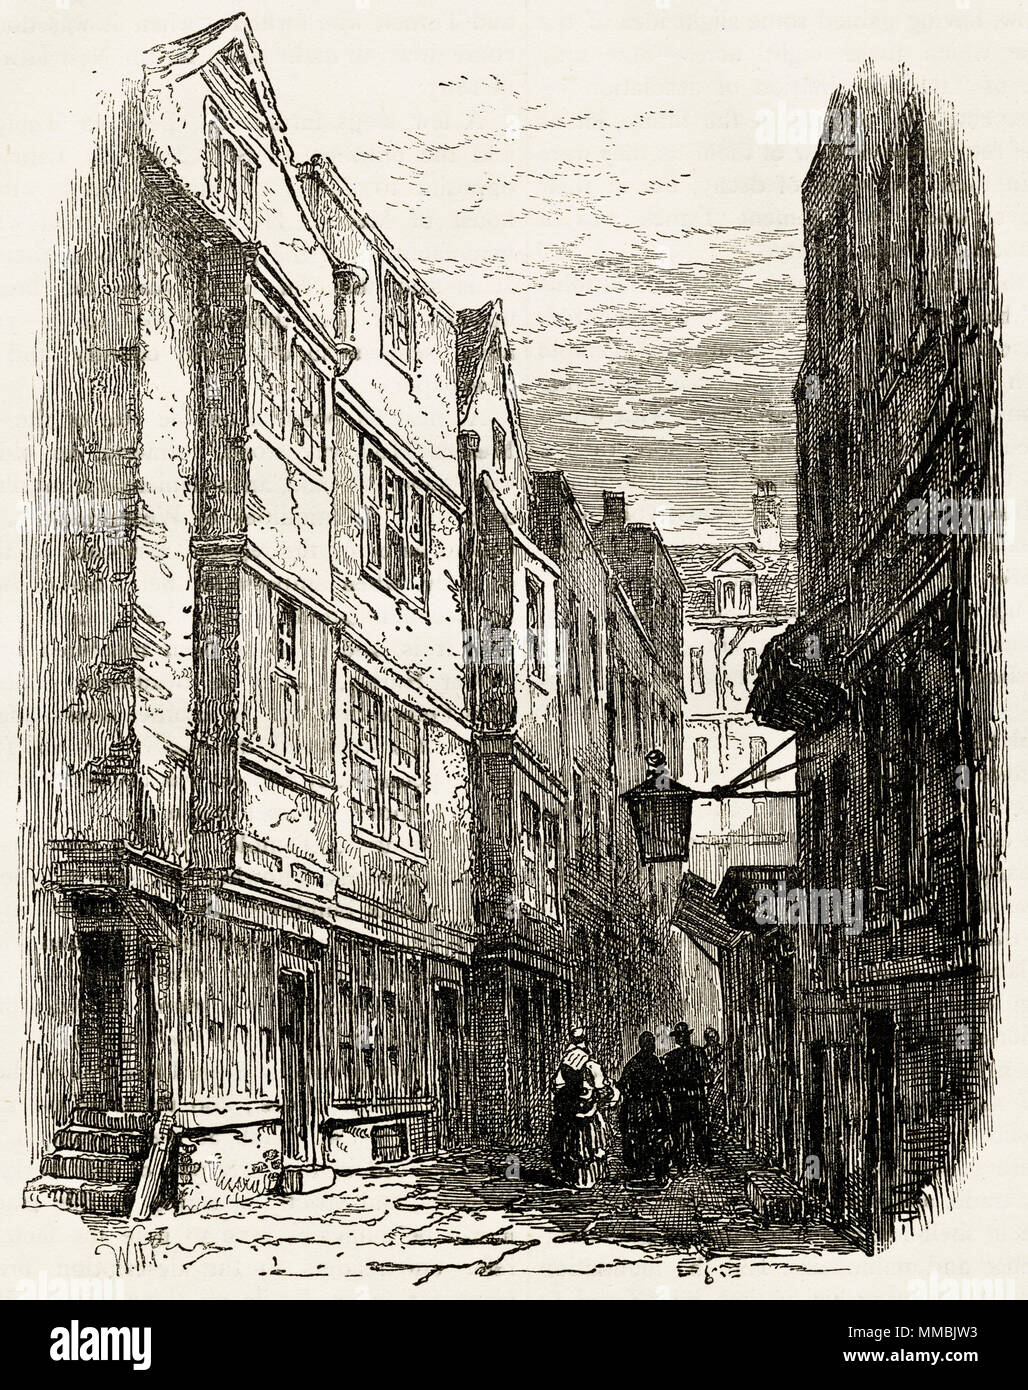 Serle's Place, London, England, UK démoli en 1866 pour faire place à la Royal Courts of Justice. 19ème siècle gravure victorienne circa 1878 Banque D'Images